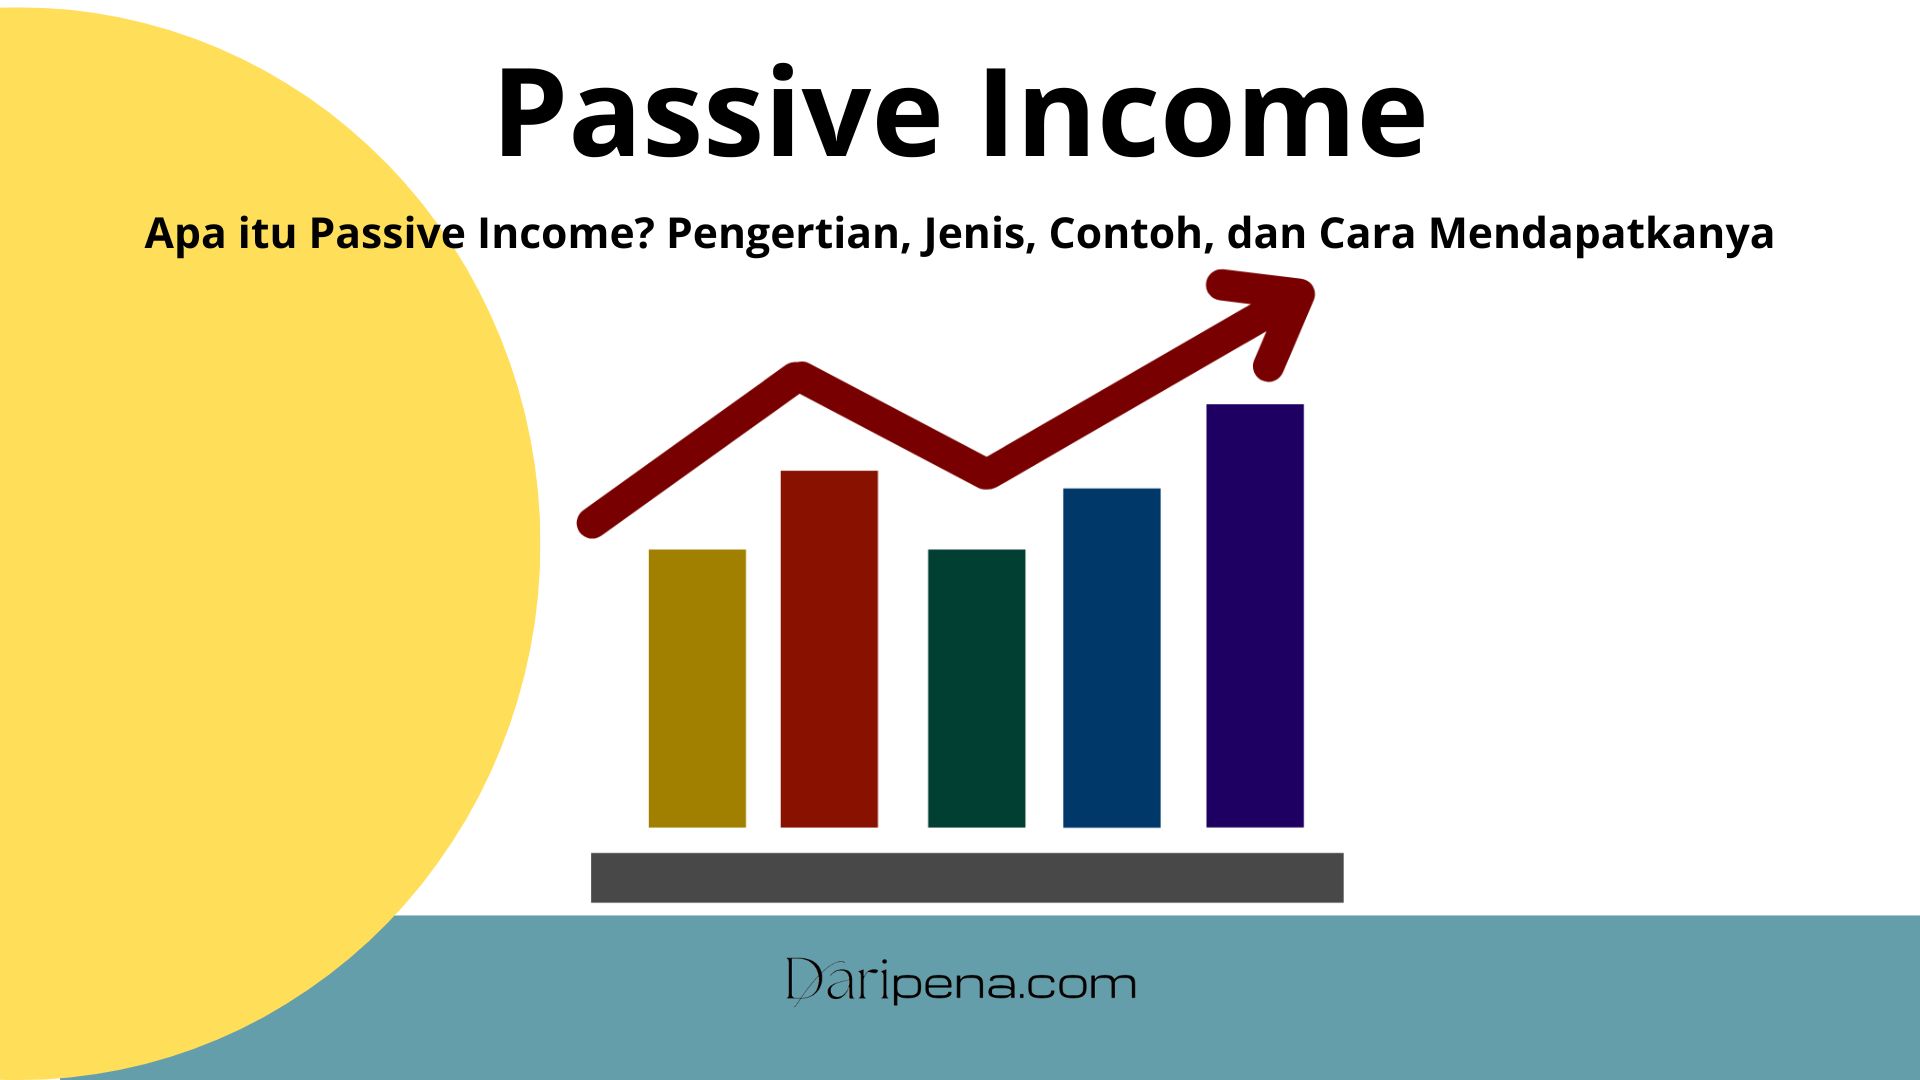 Video Passive Income  101 Passive Income Ideas Under $1000